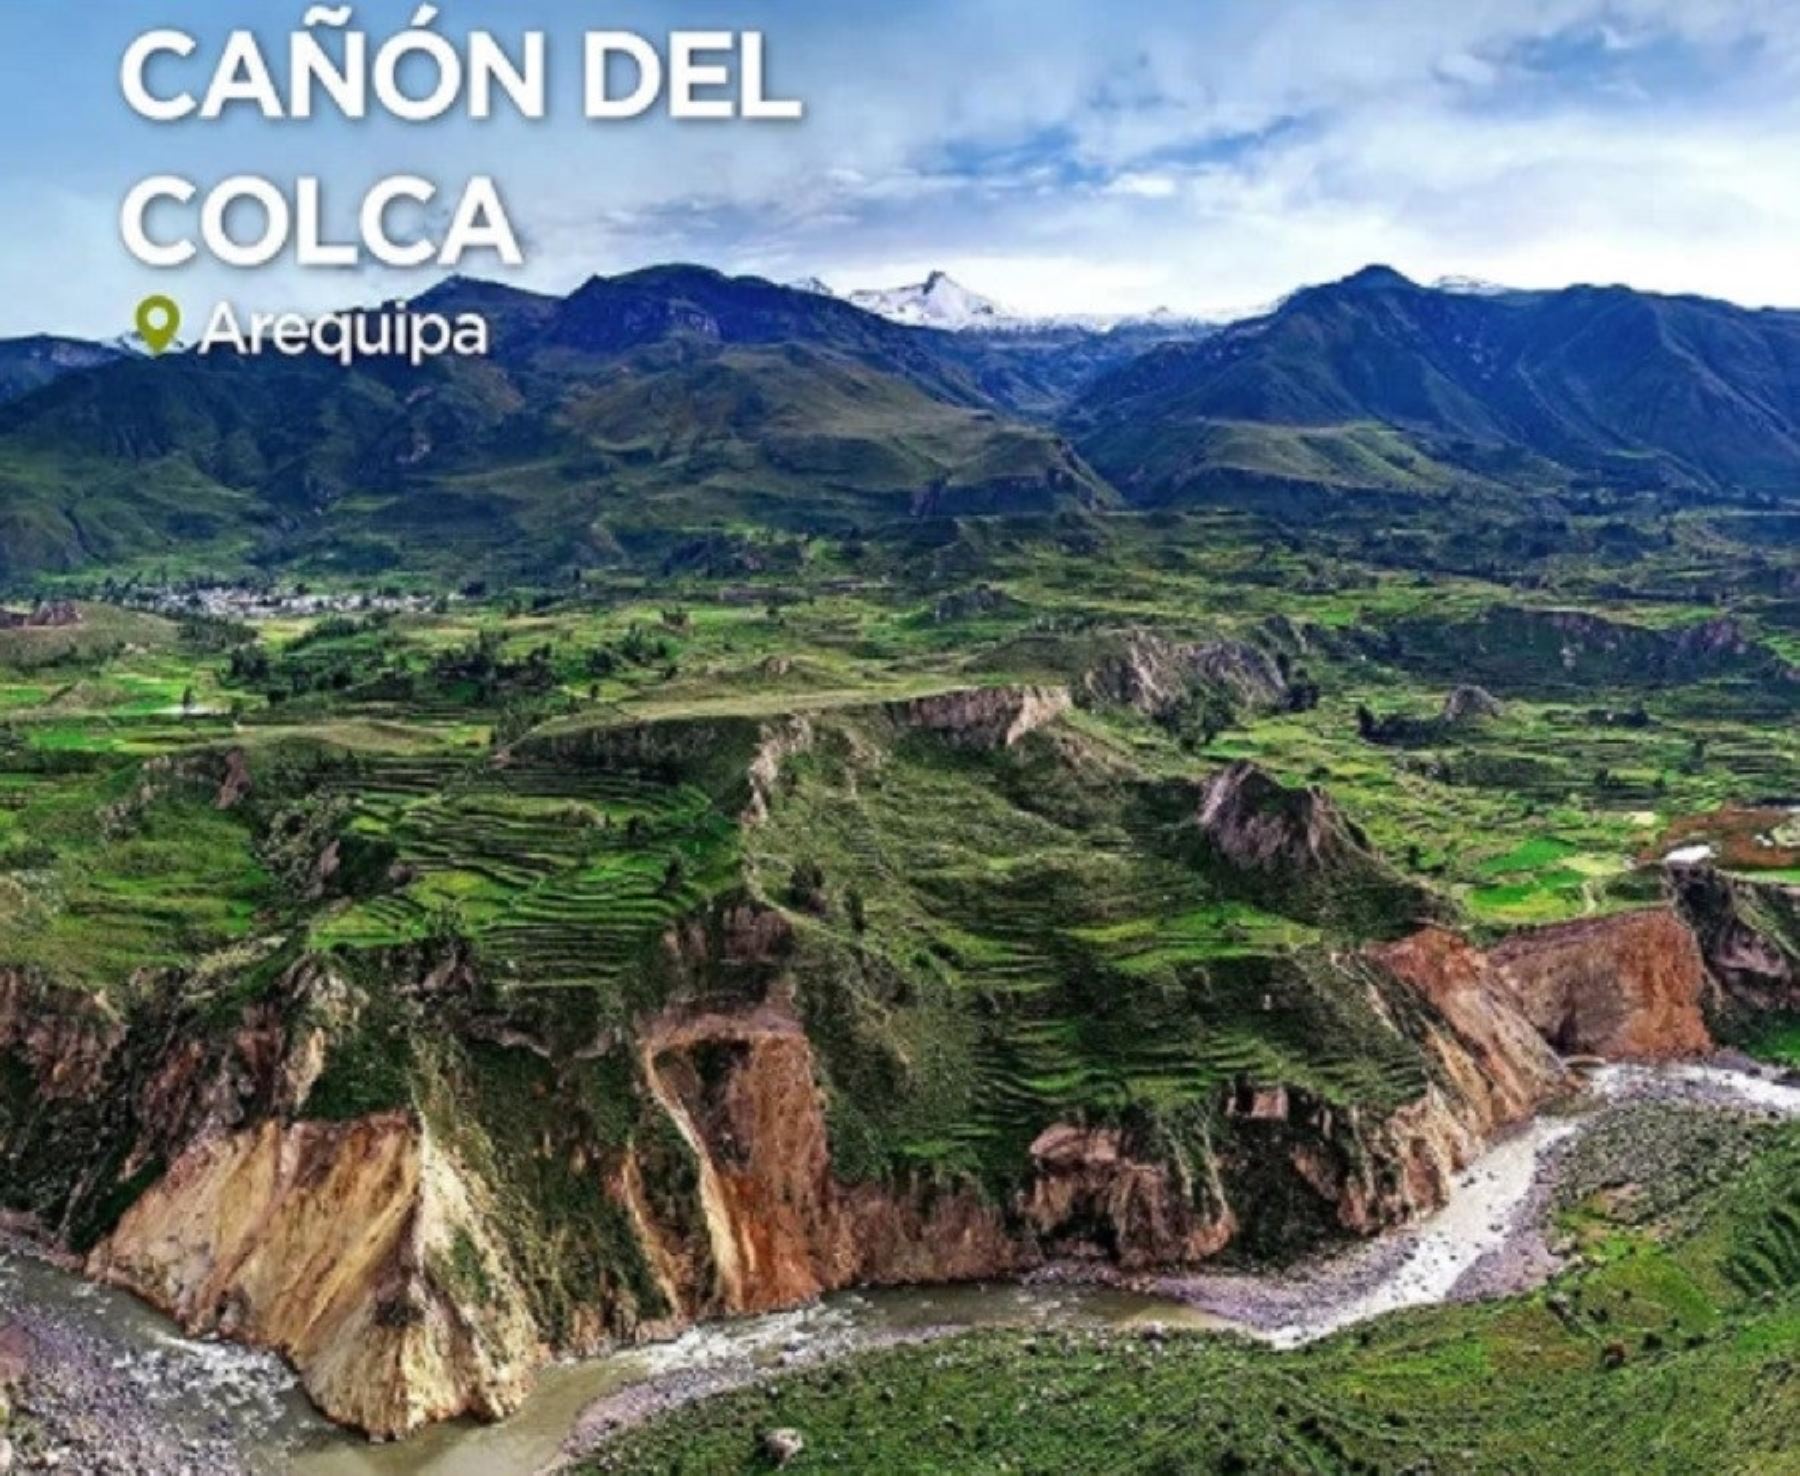 Revista National Geographic destaca bondades culturales y geográficas del Cañón del Colca